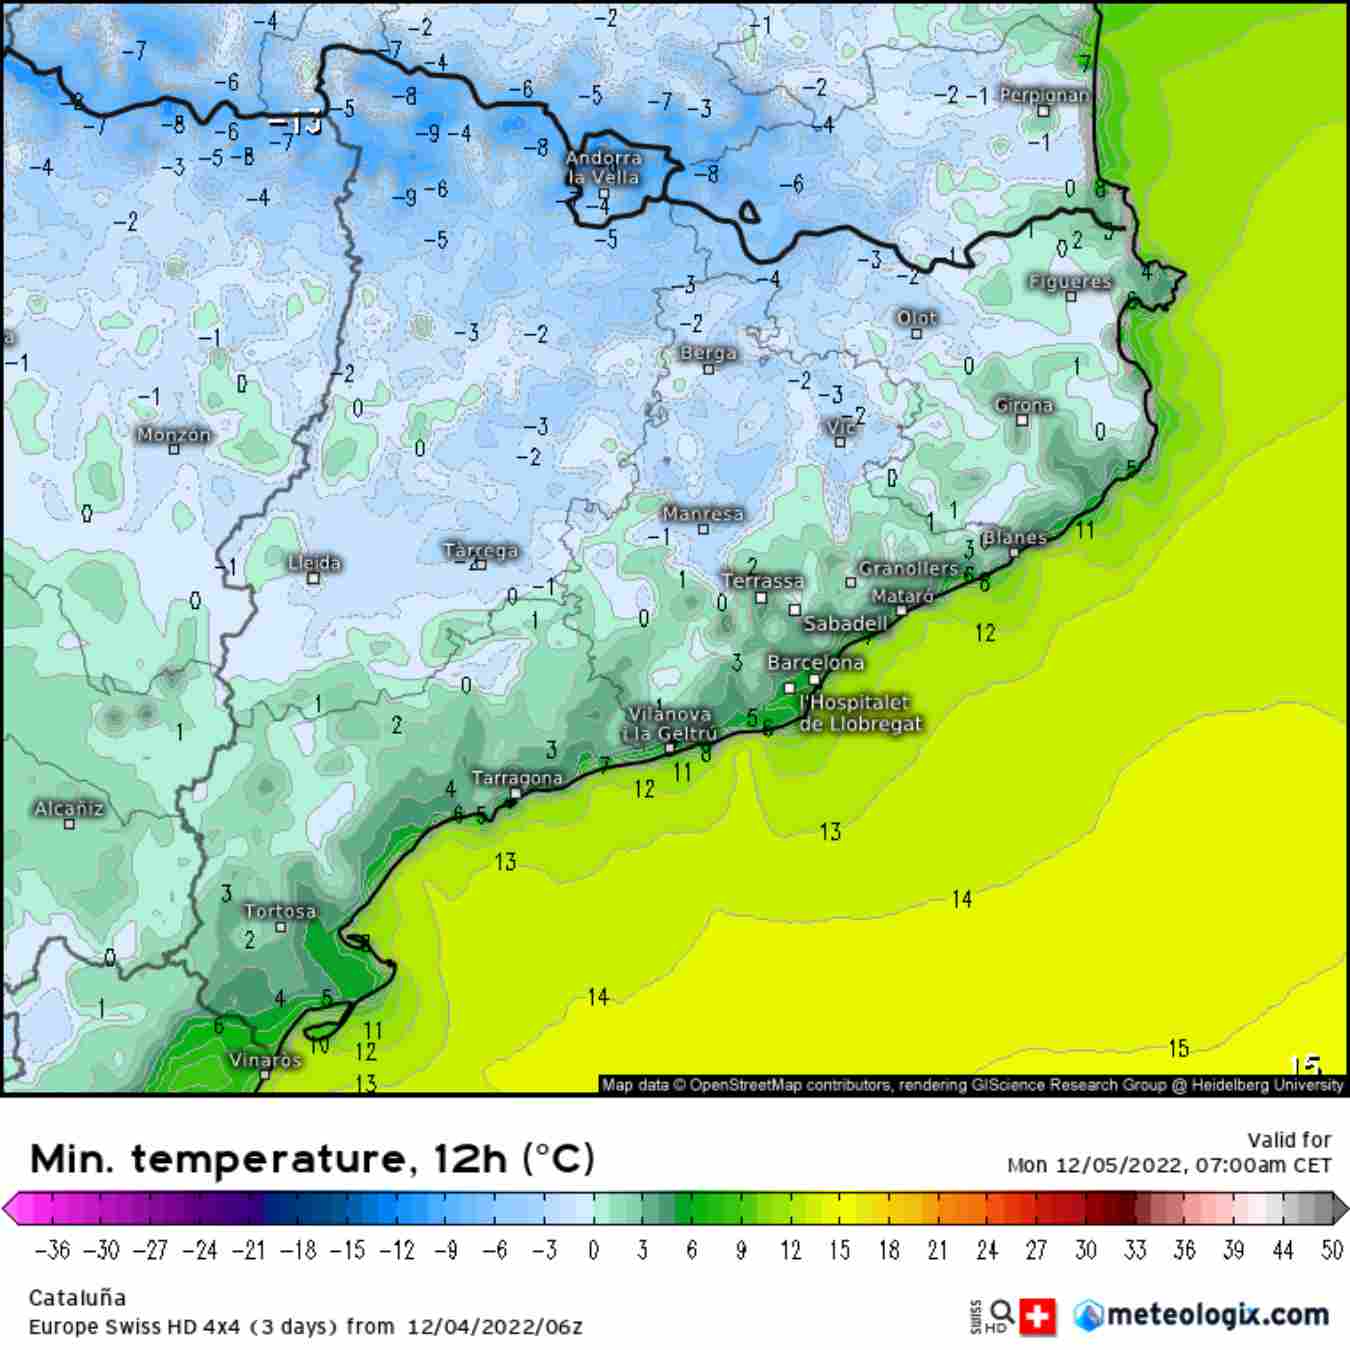 Casi toda Catalunya quedará por debajo de los 0ºC la mañana de lunes / Europe Swiss HD 4x4